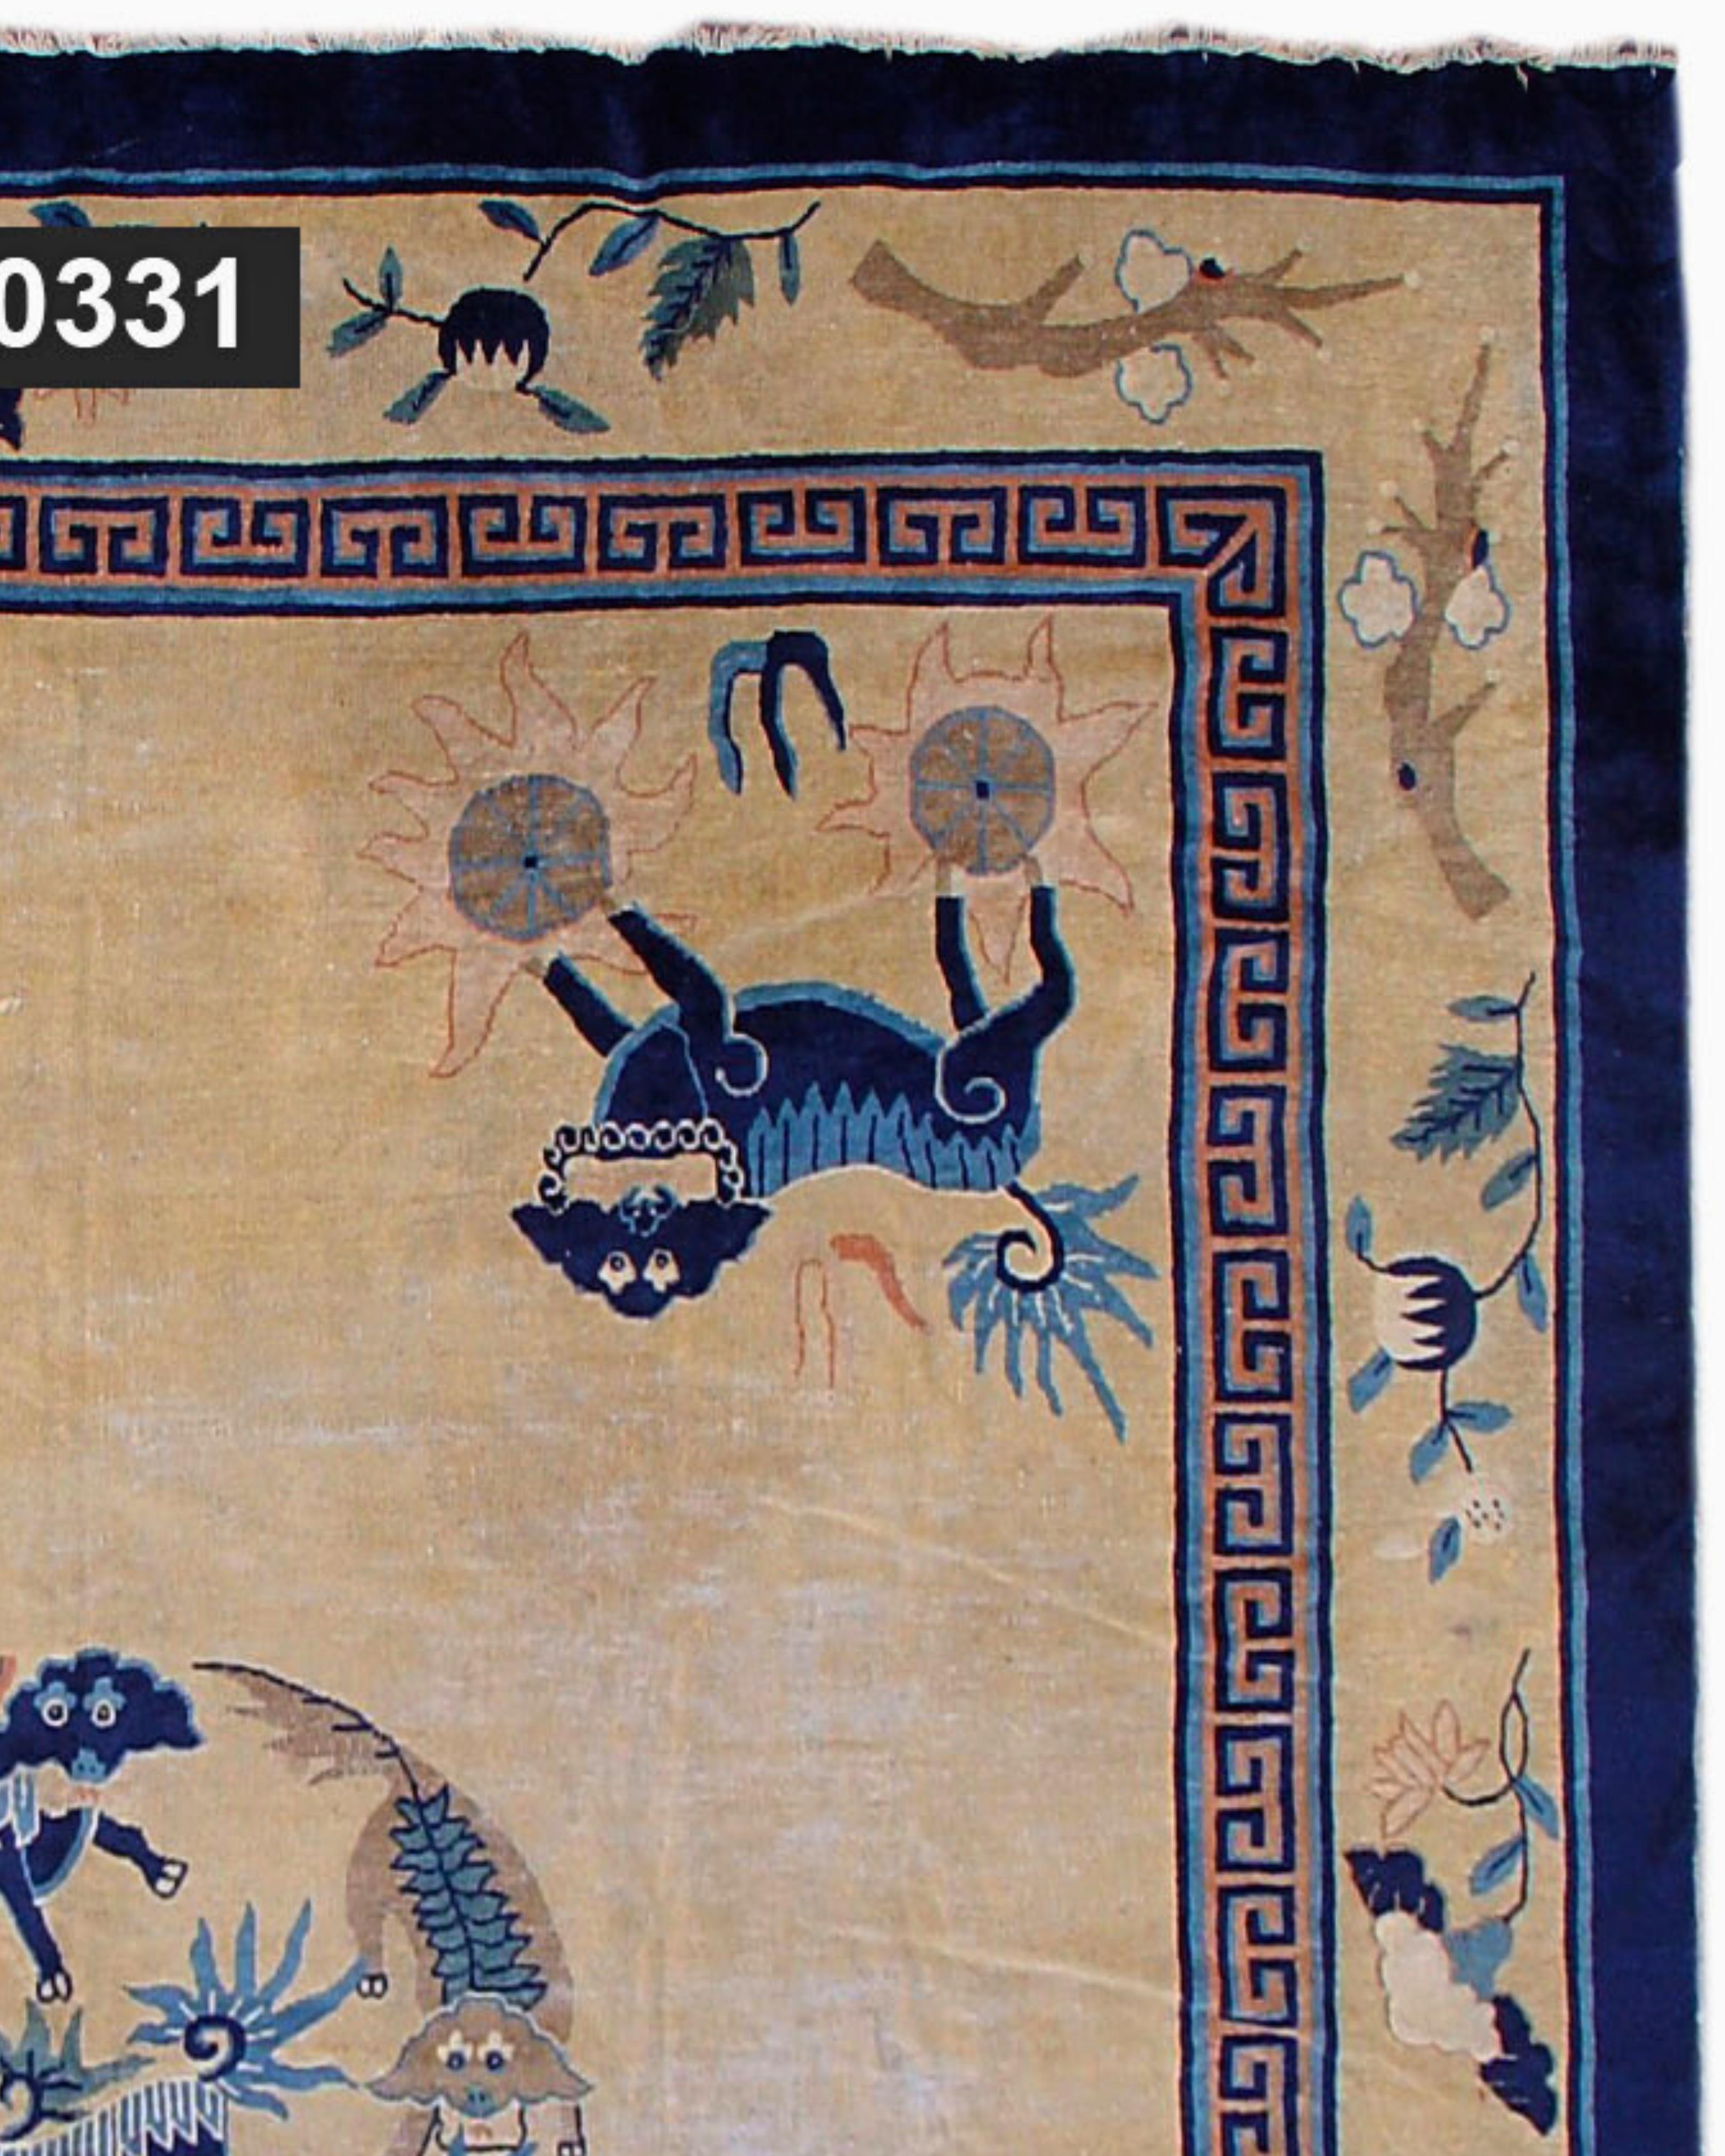 Ancien tapis chinois en forme de chien de Pékin, 19e siècle

De joyeux chiens composent le médaillon et s'ébattent également aux deux extrémités de ce tapis très inhabituel.

Informations supplémentaires :
Dimensions : 8'0